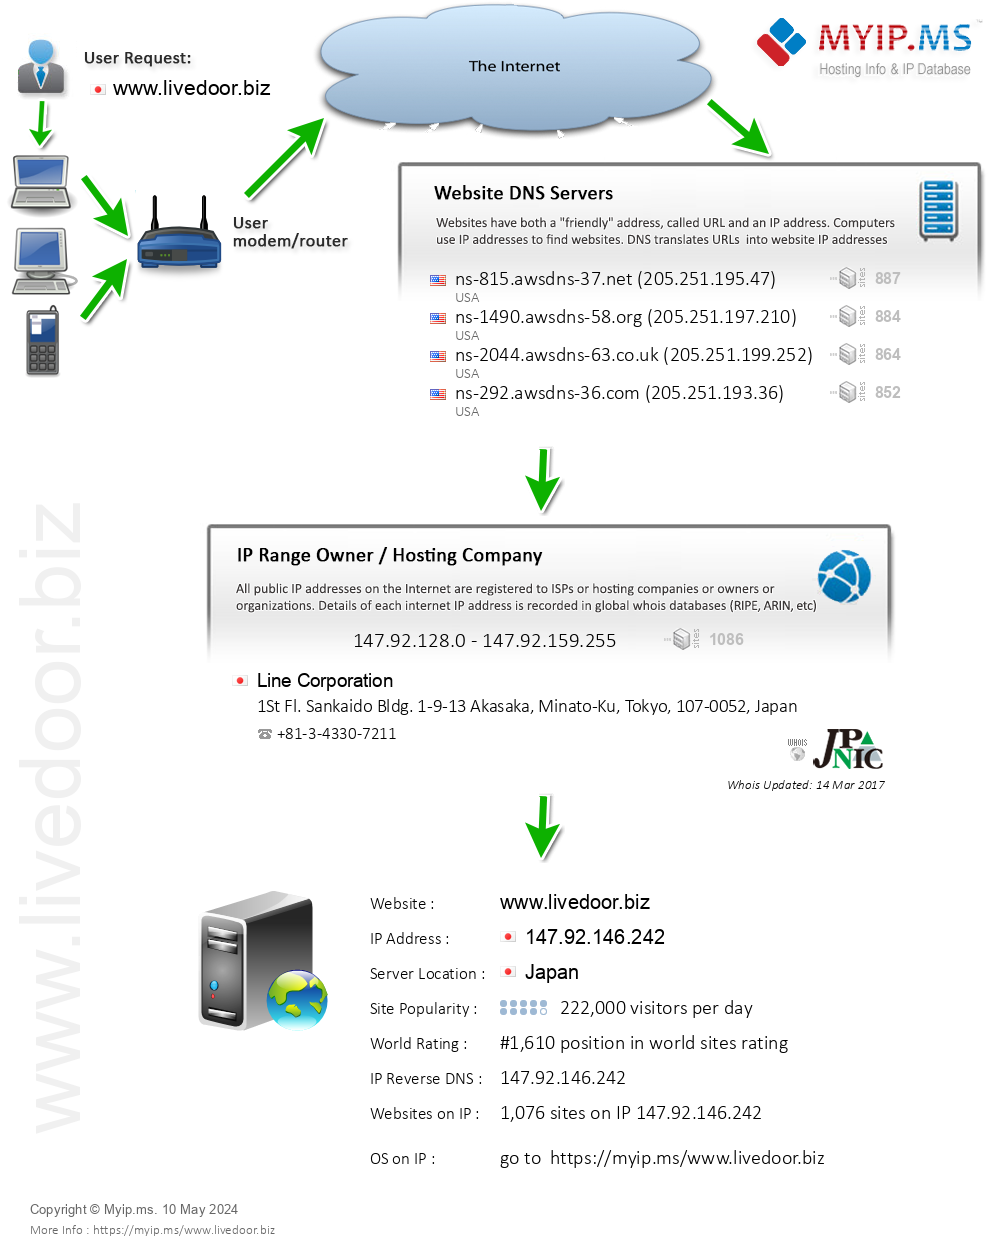 Livedoor.biz - Website Hosting Visual IP Diagram